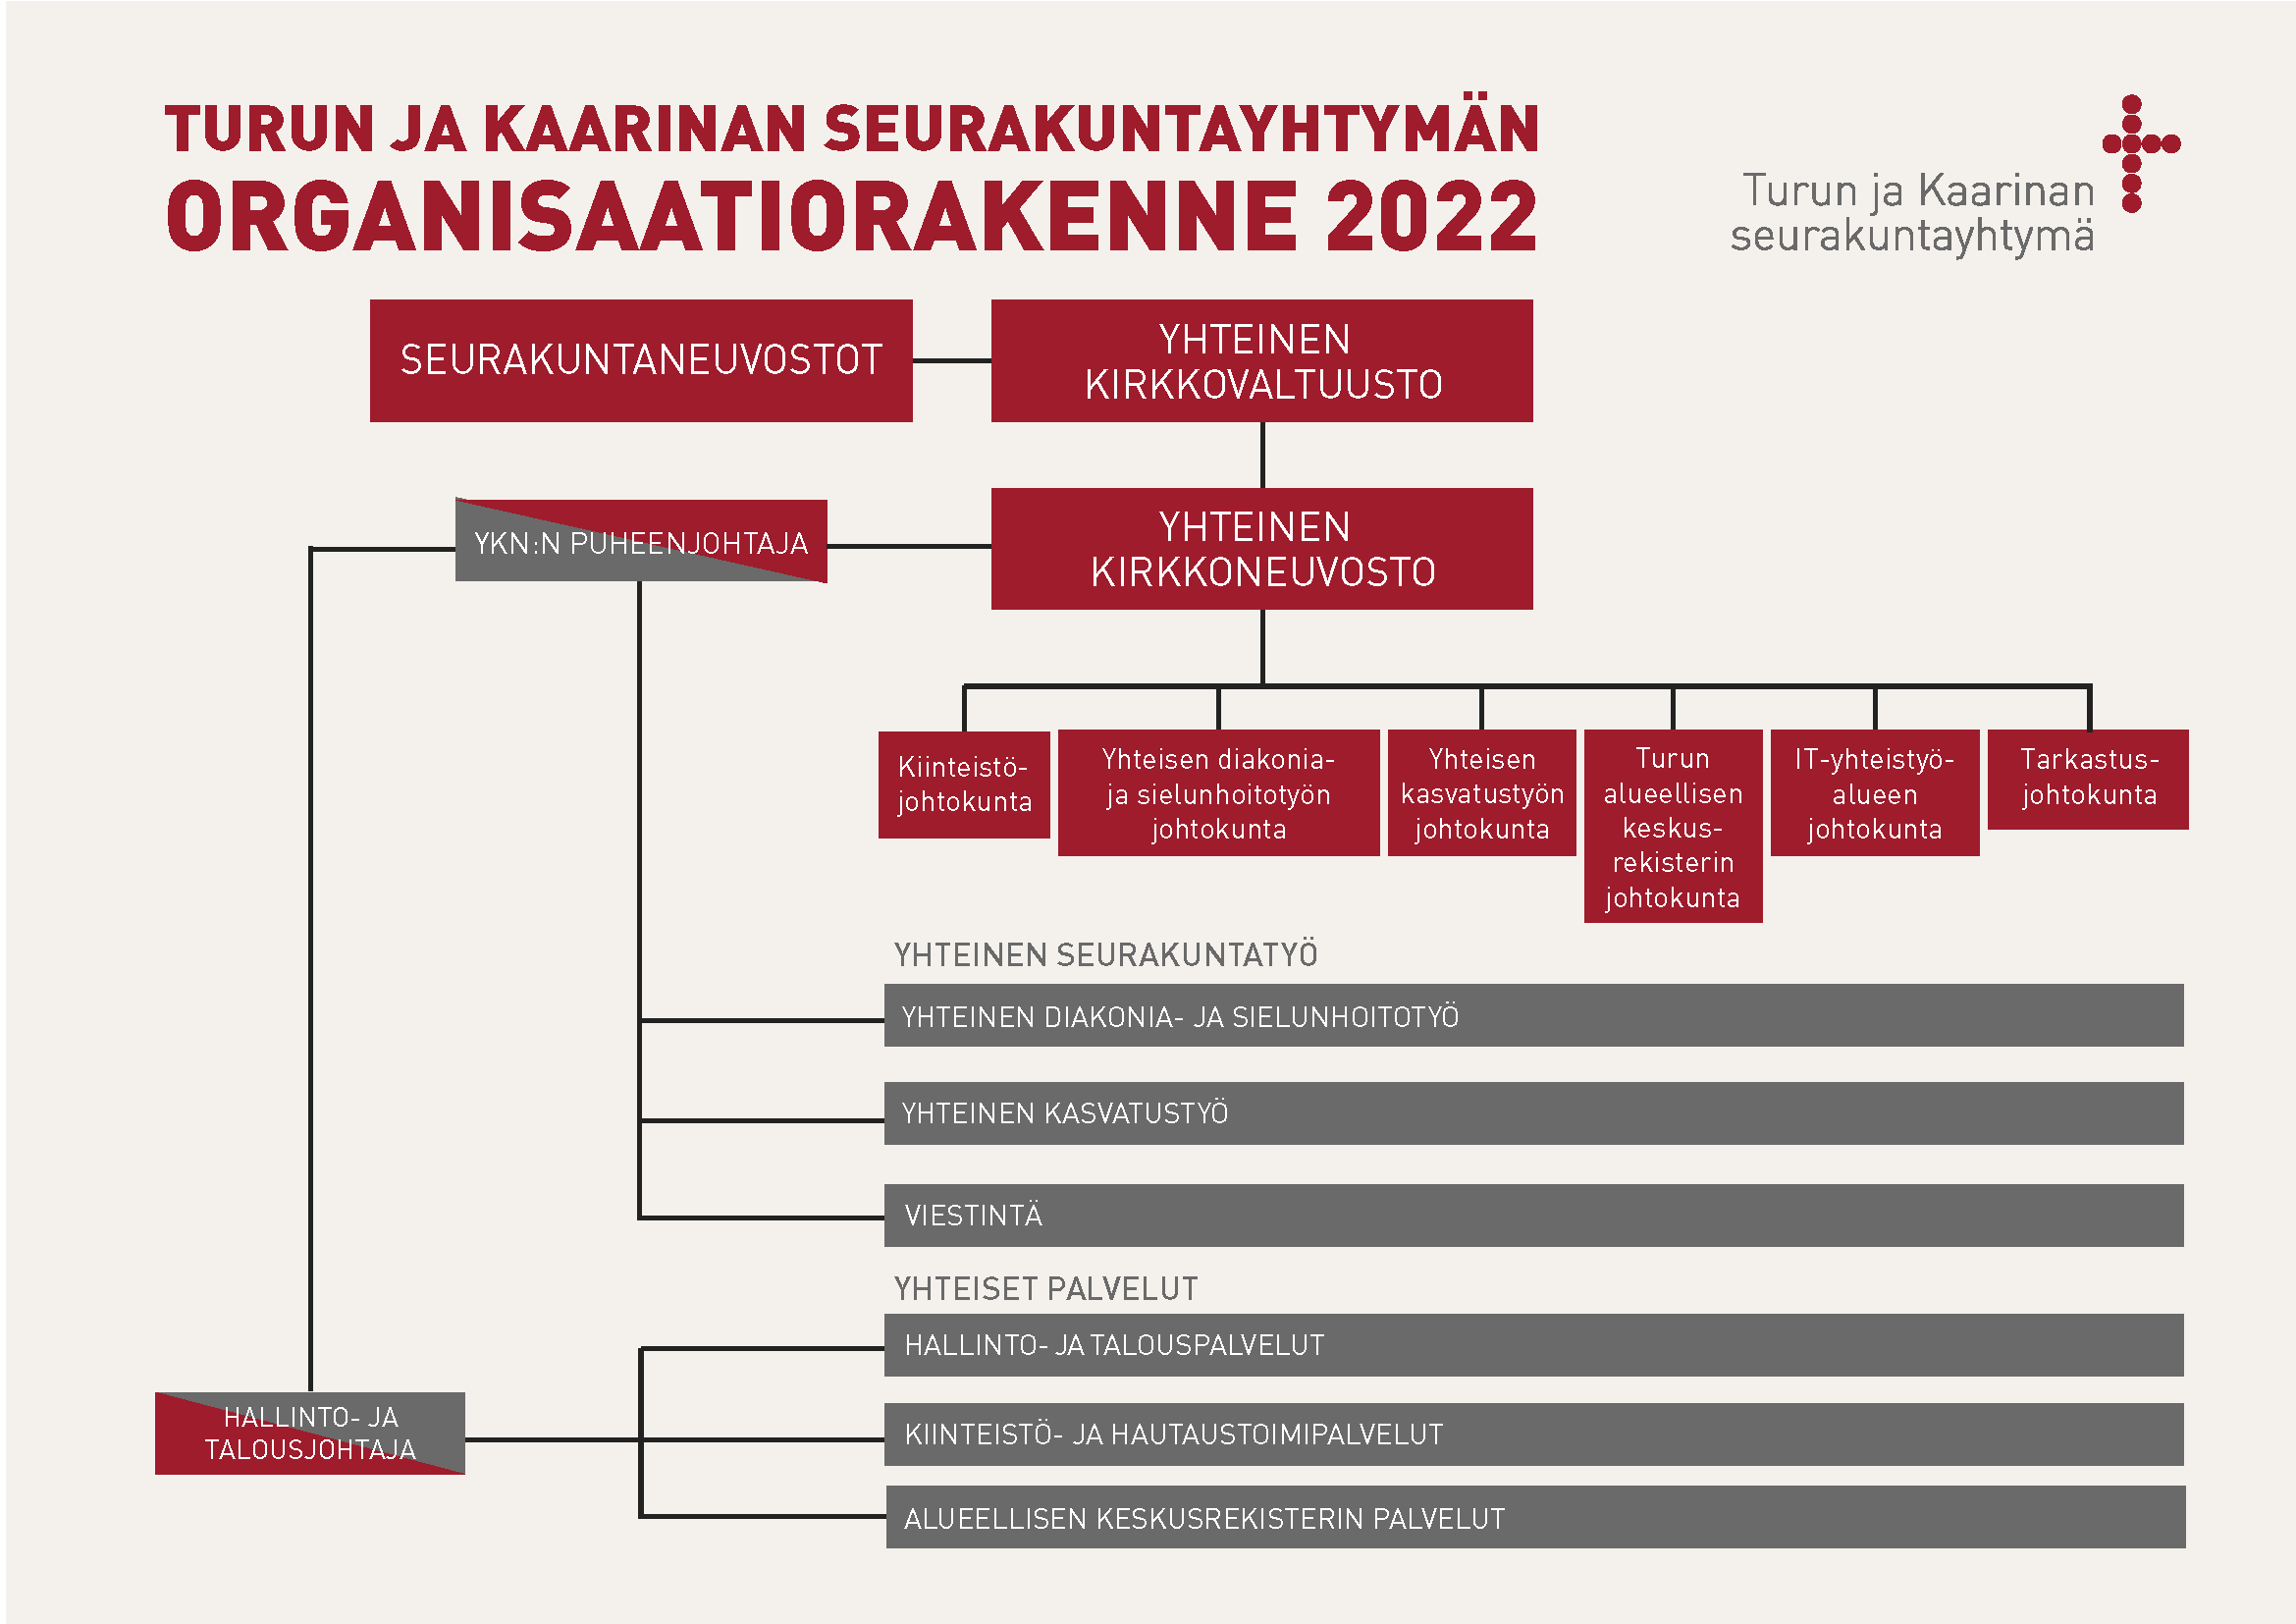 Seurakuntayhtymän organisaatiokaavio 2022. Sisältö avattu sivulla tekstinä.